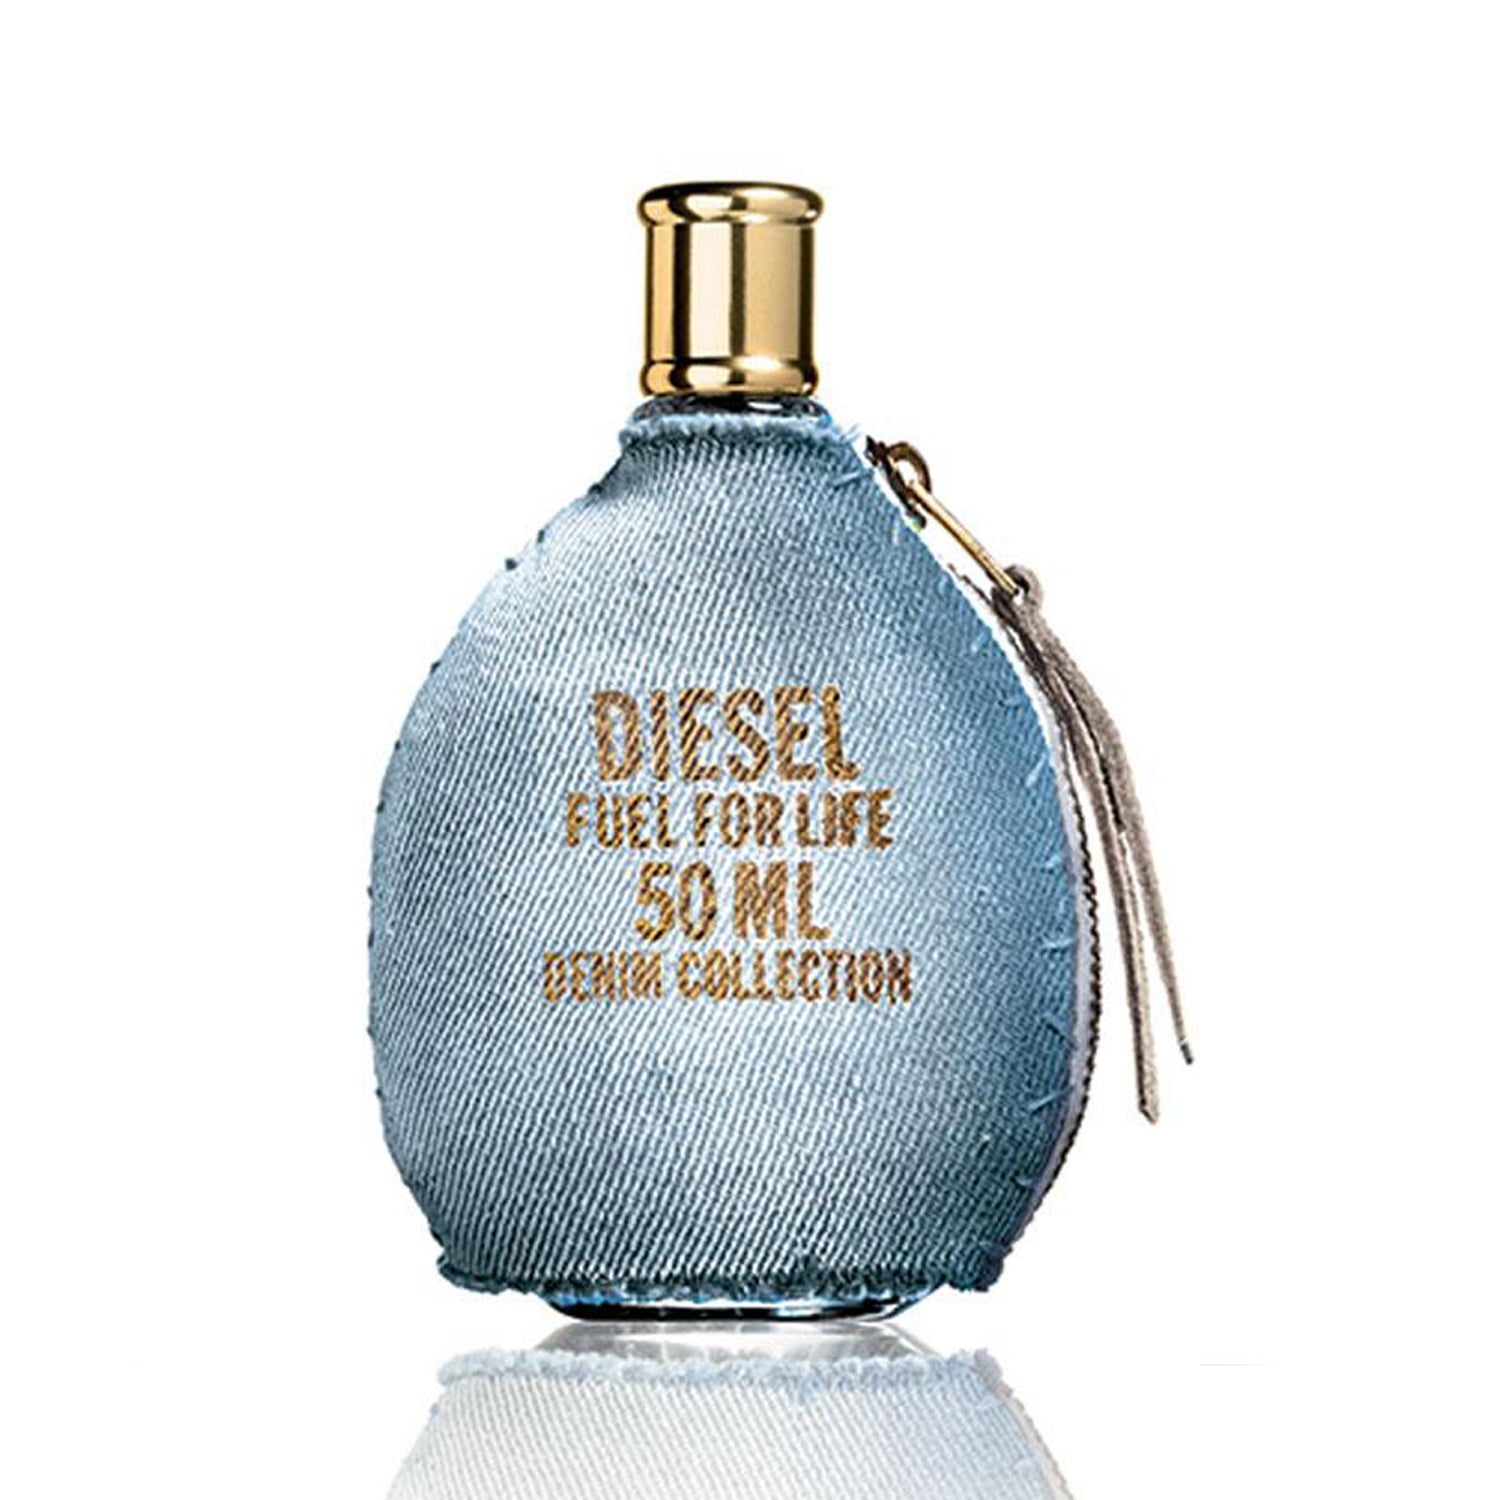 Diesel Fuel For Life Denim Eau de Toilette Spray 50ml (Women)